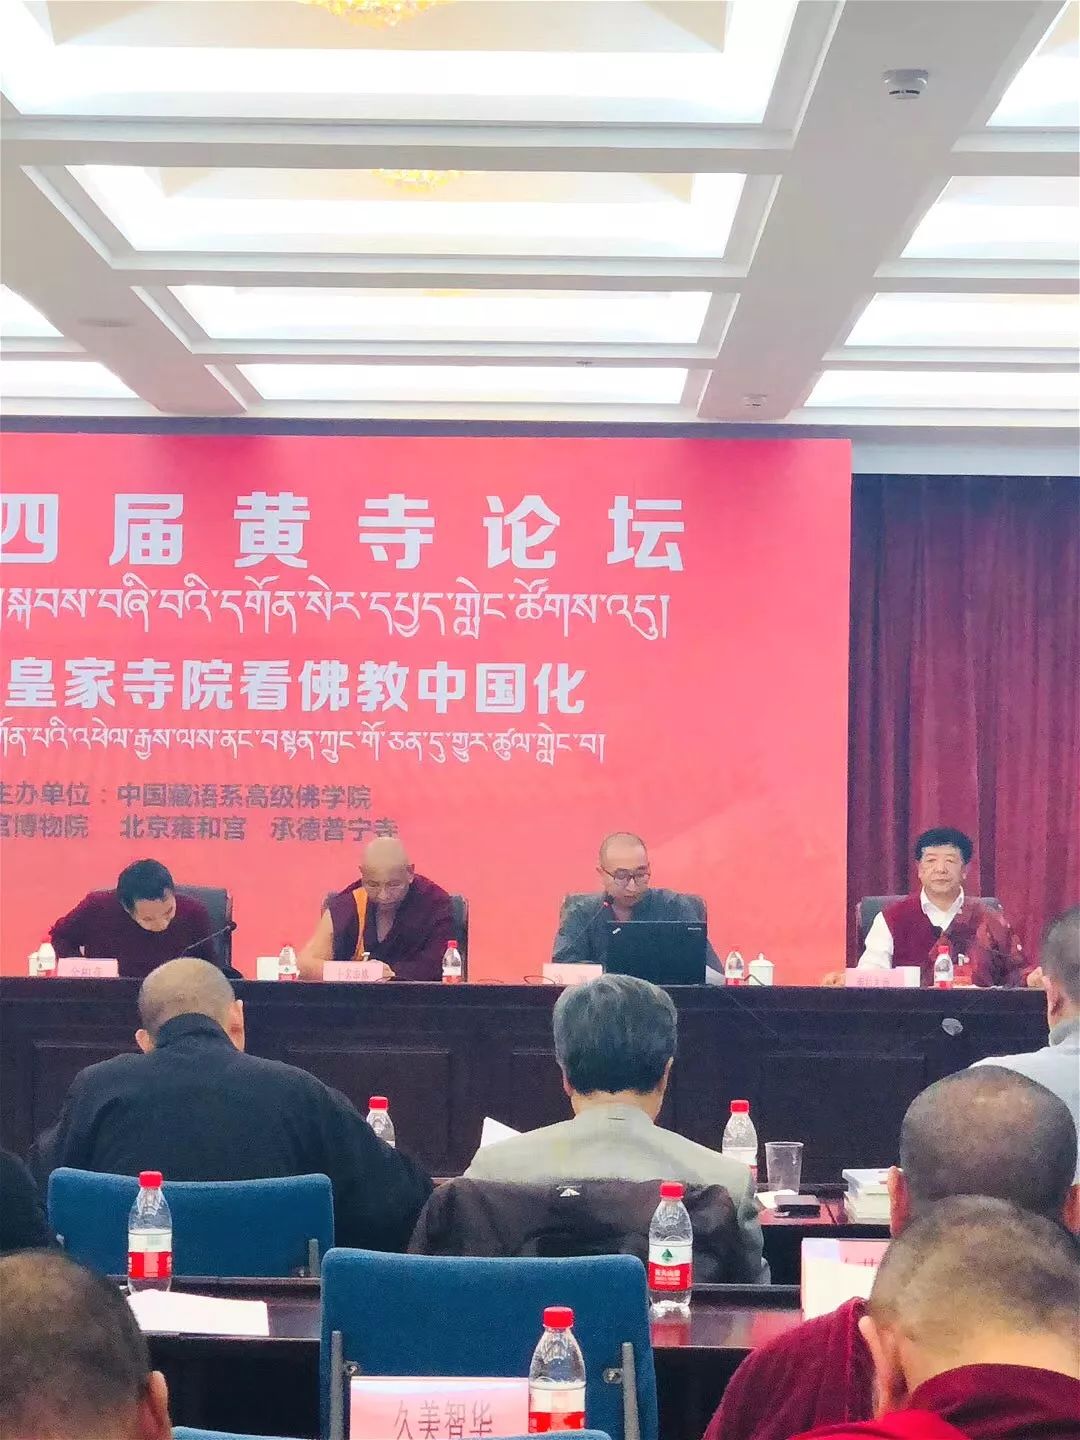 第四届黄寺论坛在北京举行   它与南京栖霞古寺有什么关系